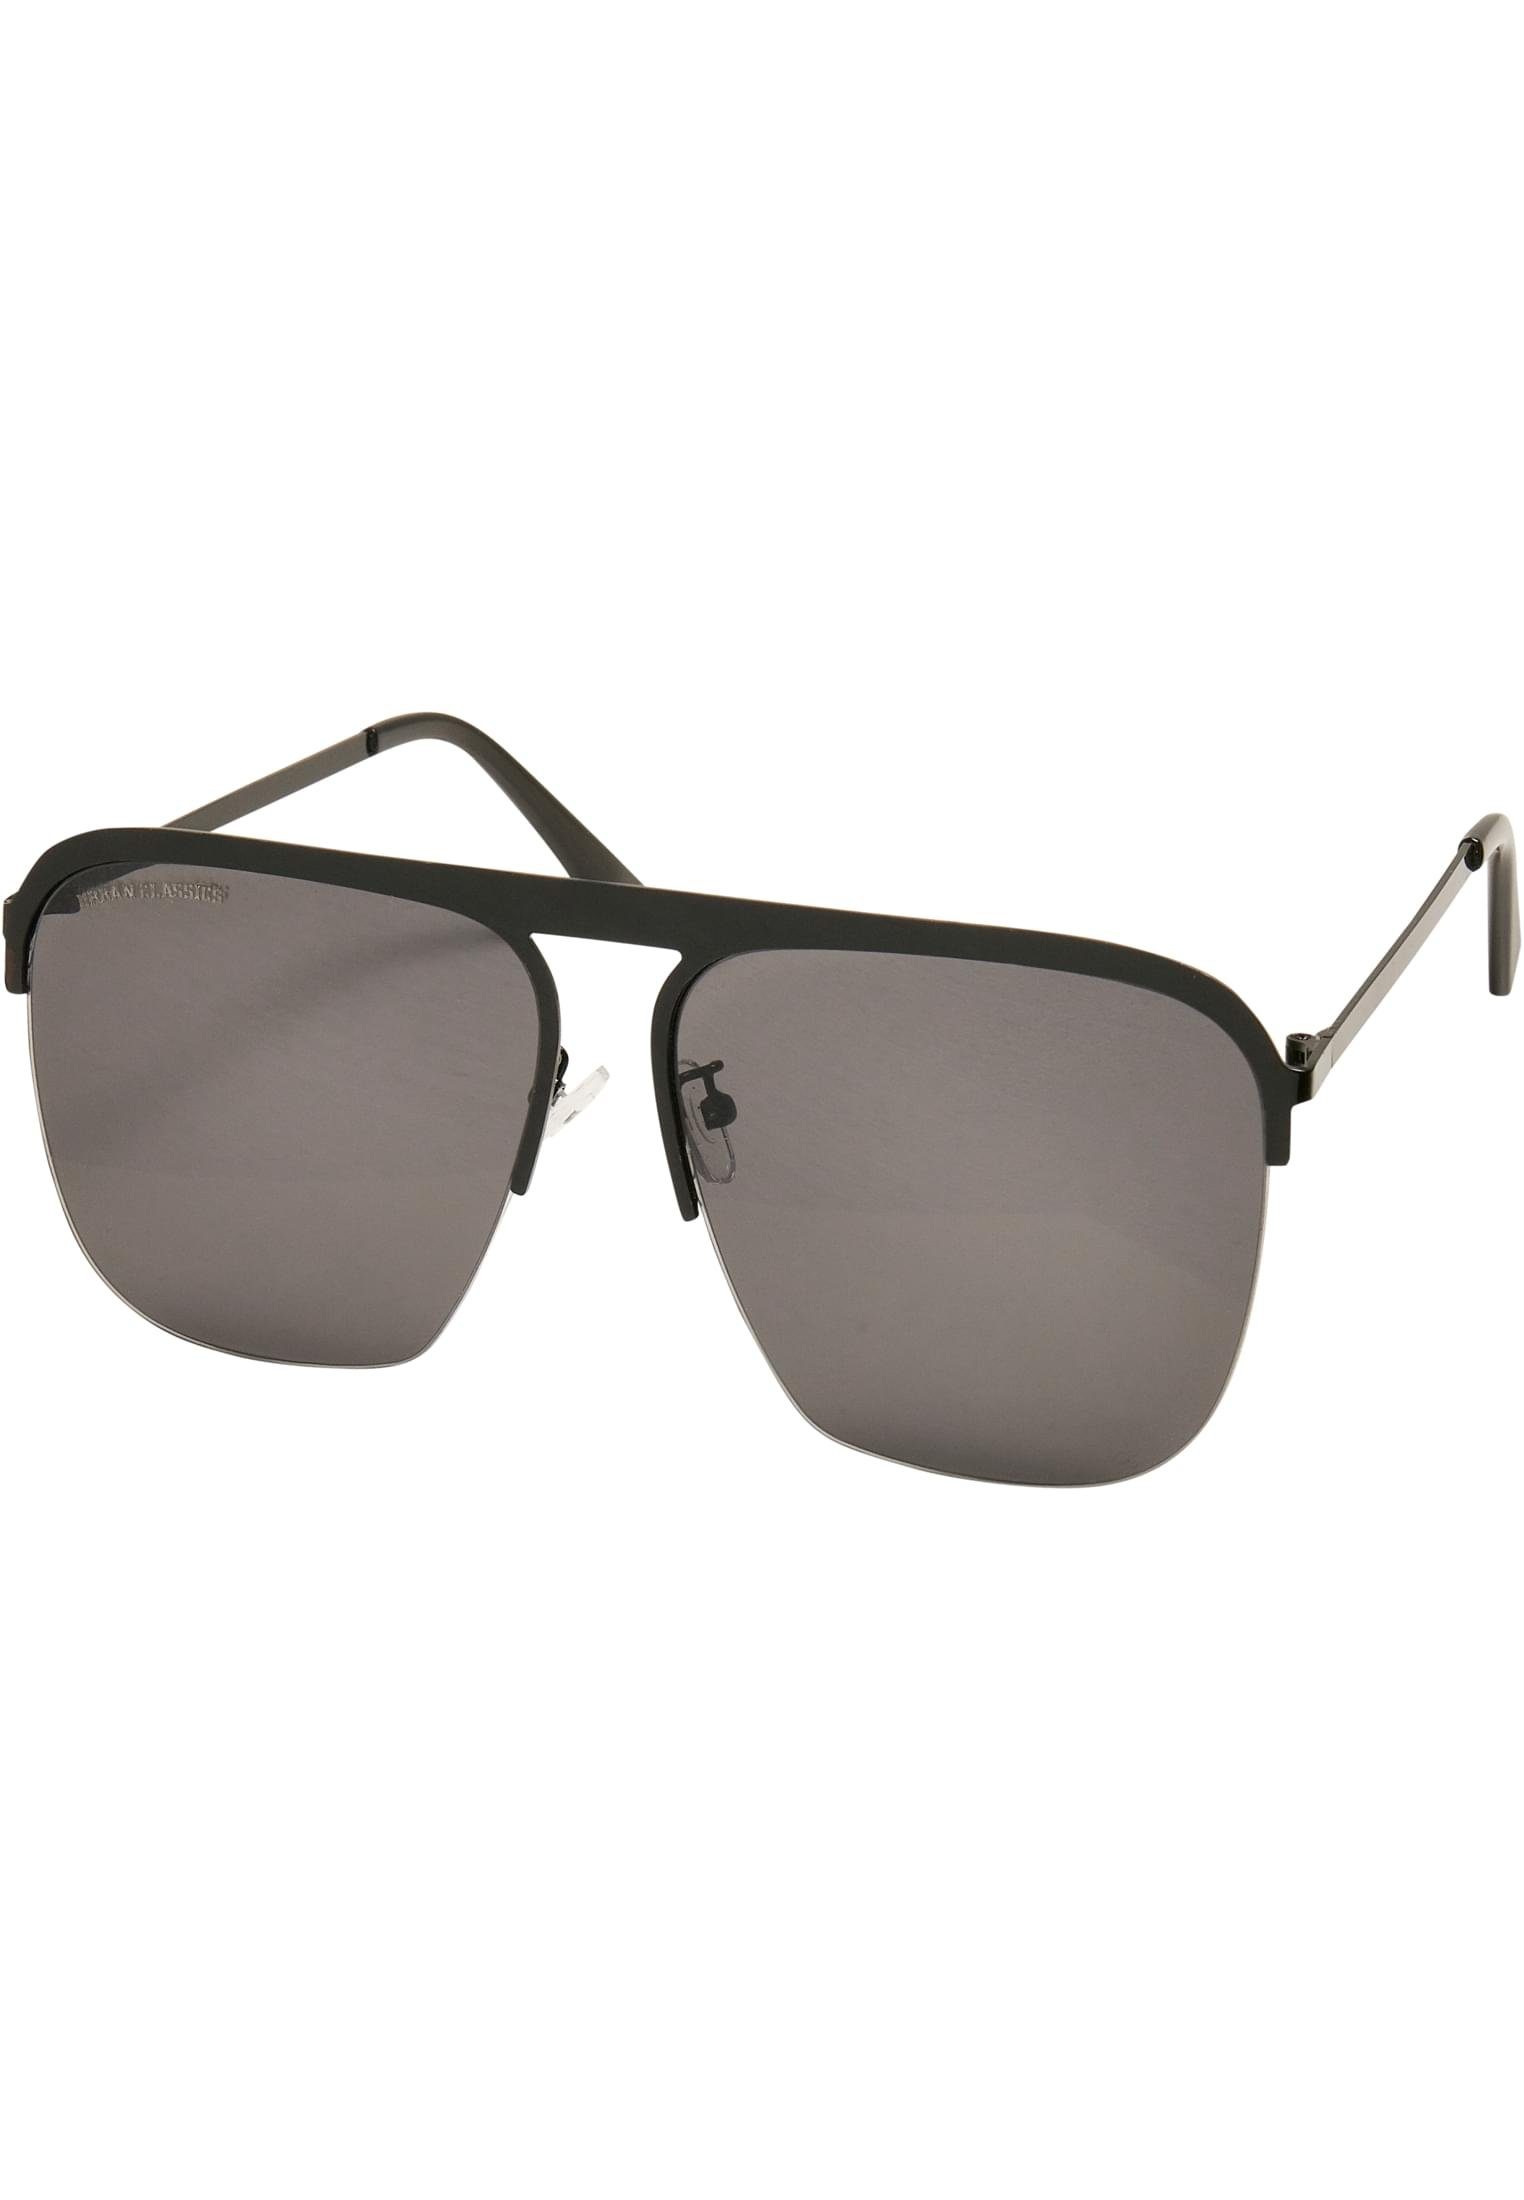 Unisex Sunglasses CLASSICS Sonnenbrille URBAN